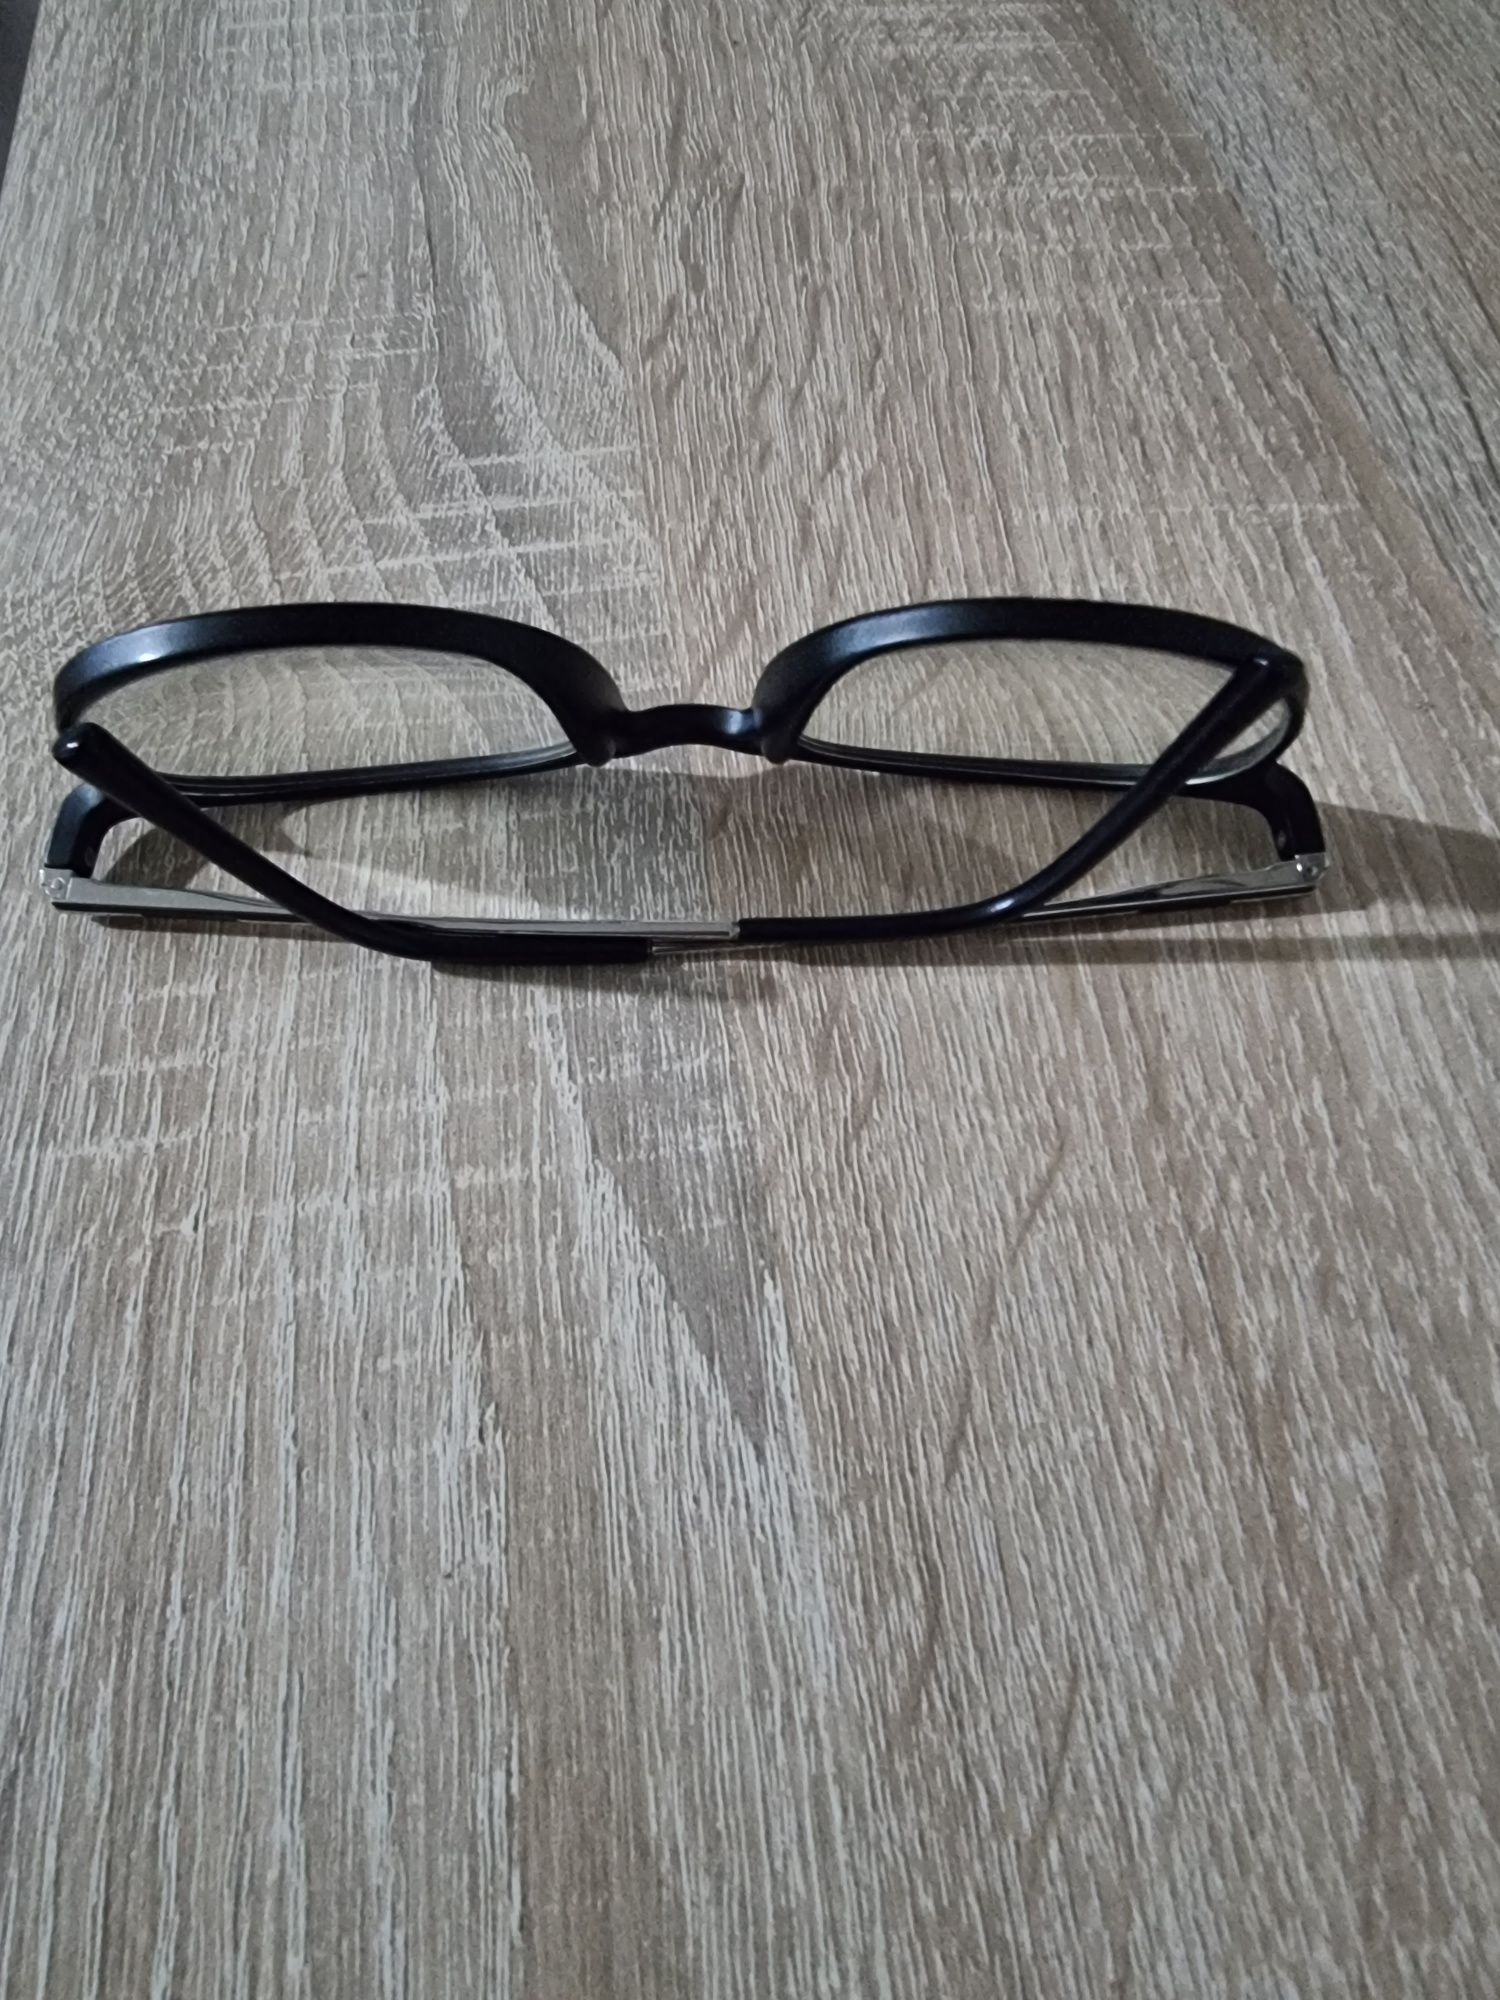 Rame ochelari Affinity by Liad Co.